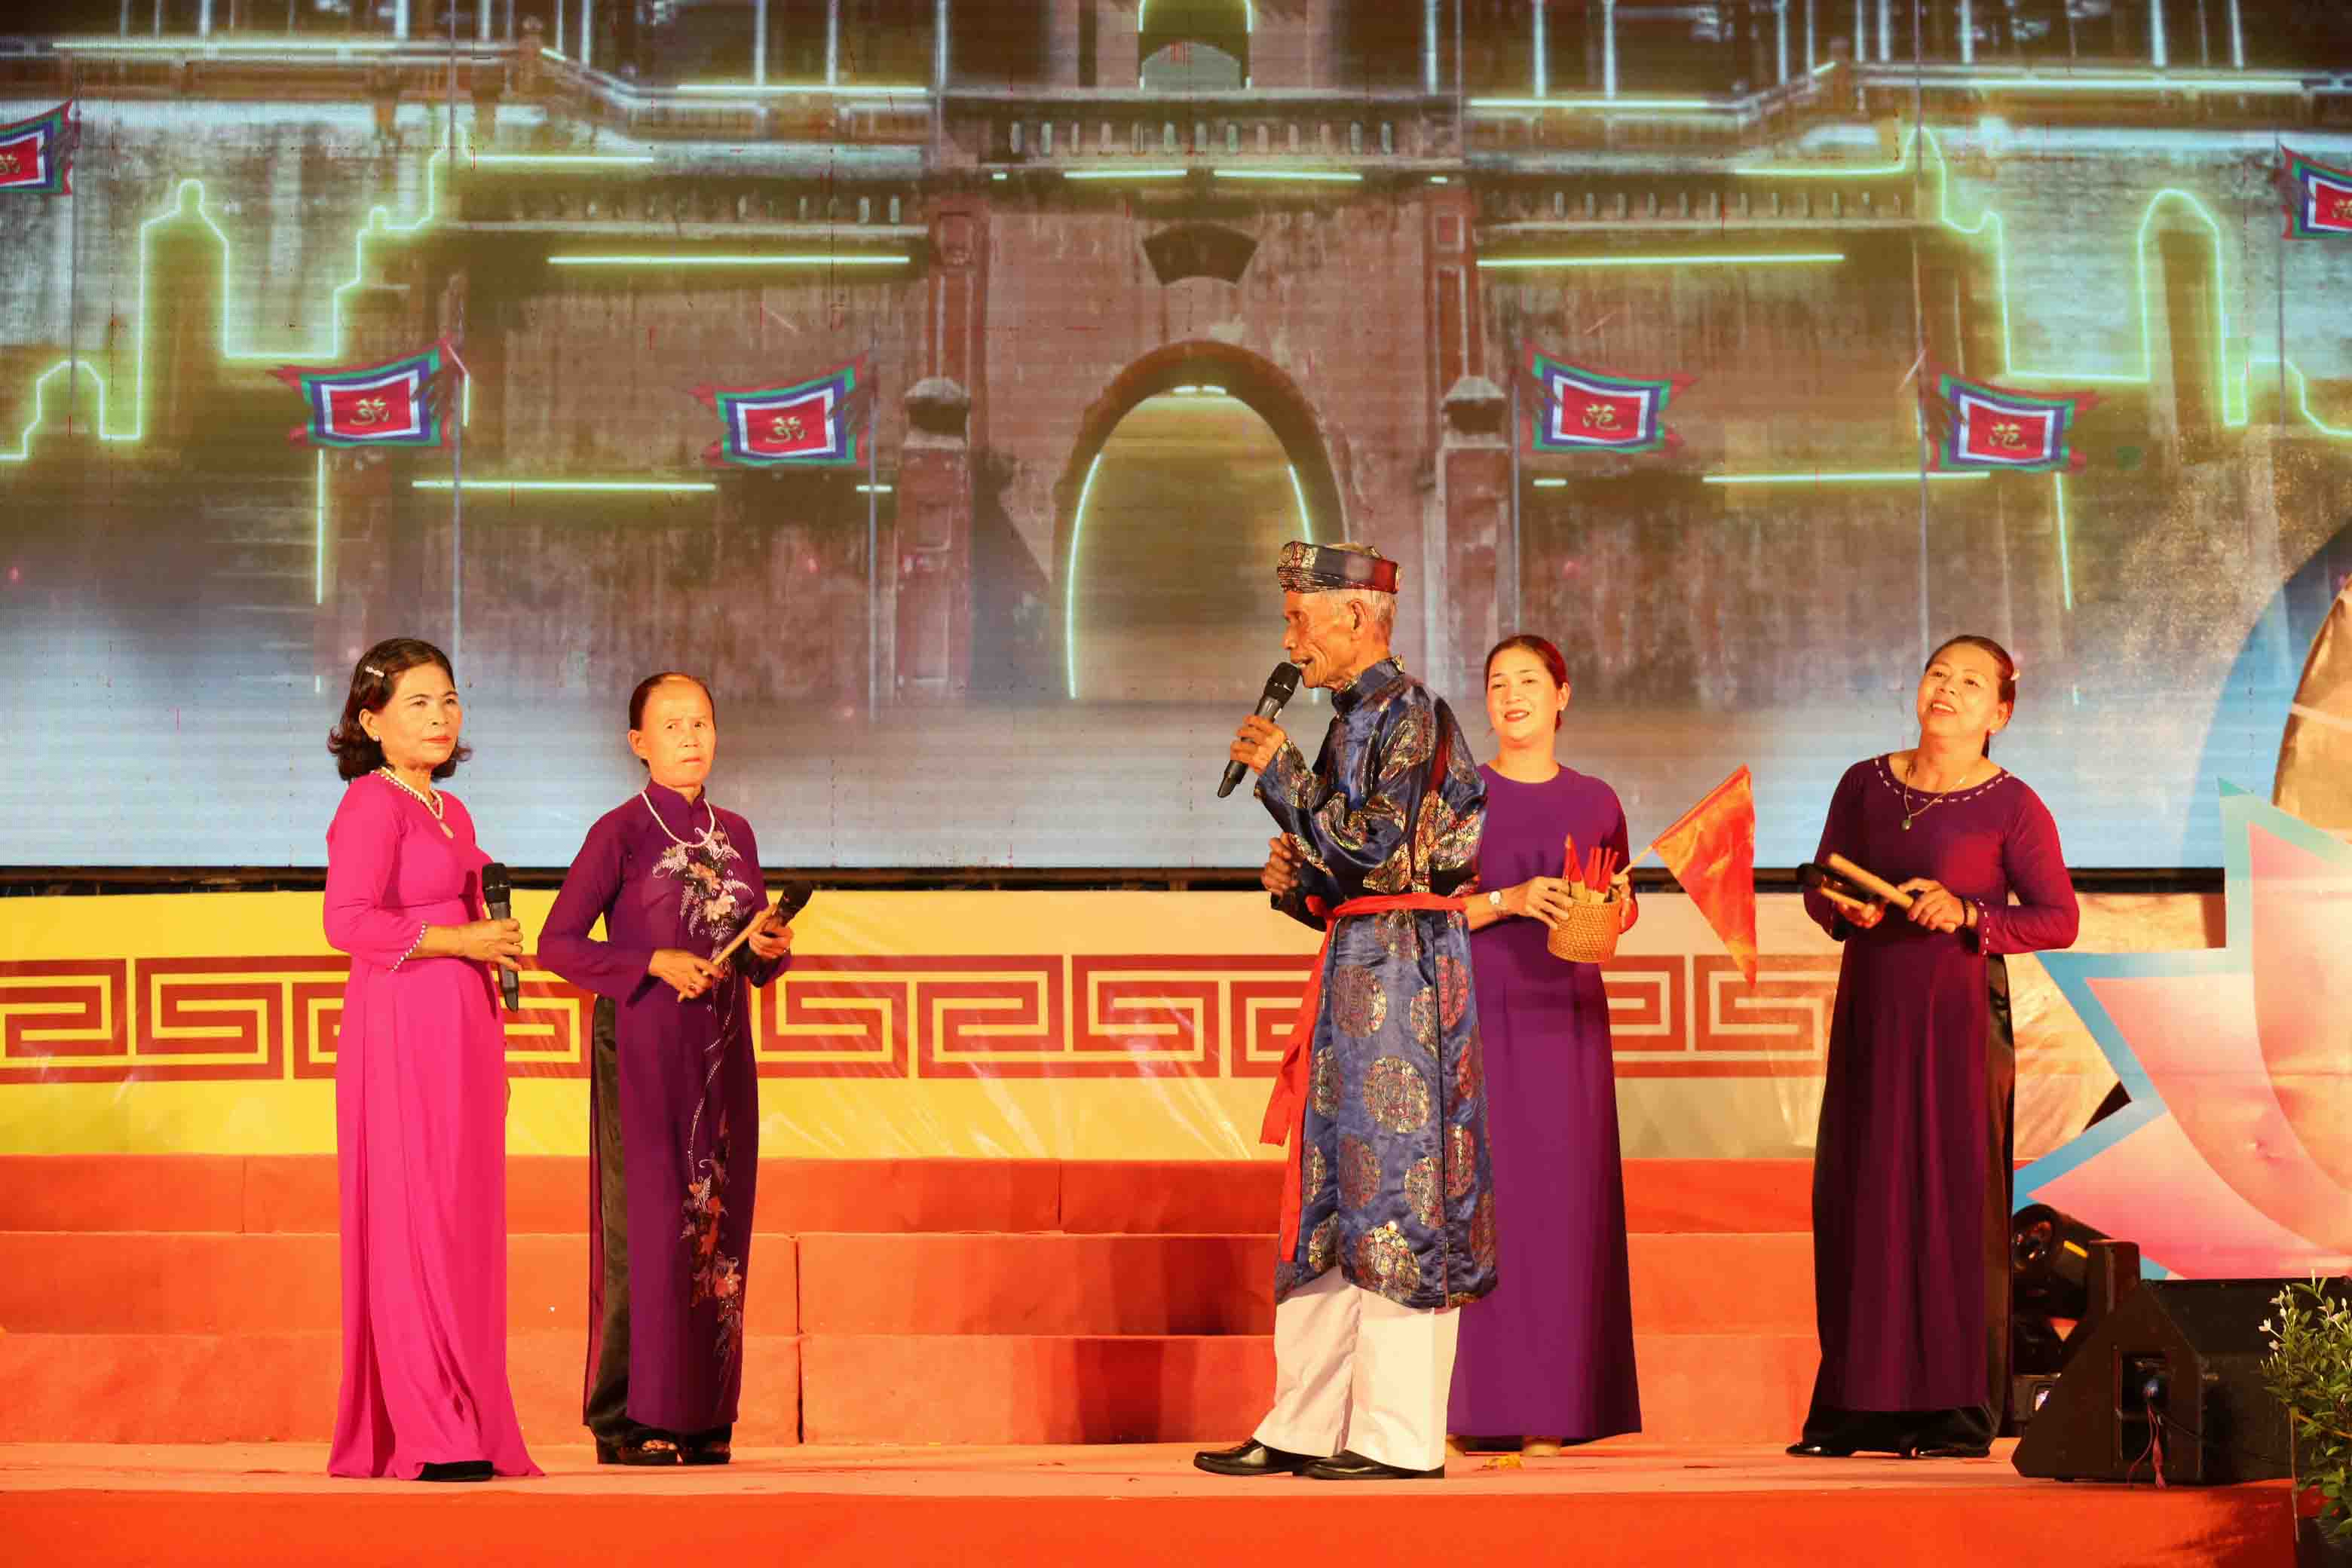 Các nghệ nhân bài chòi đến từ thị xã Hương Thủy tạo được ấn tượng với khán giả thông qua cách hô hát gọi tên quân bài với những làn điệu riêng, mang đậm màu sắc âm nhạc dân gian xứ Huế.